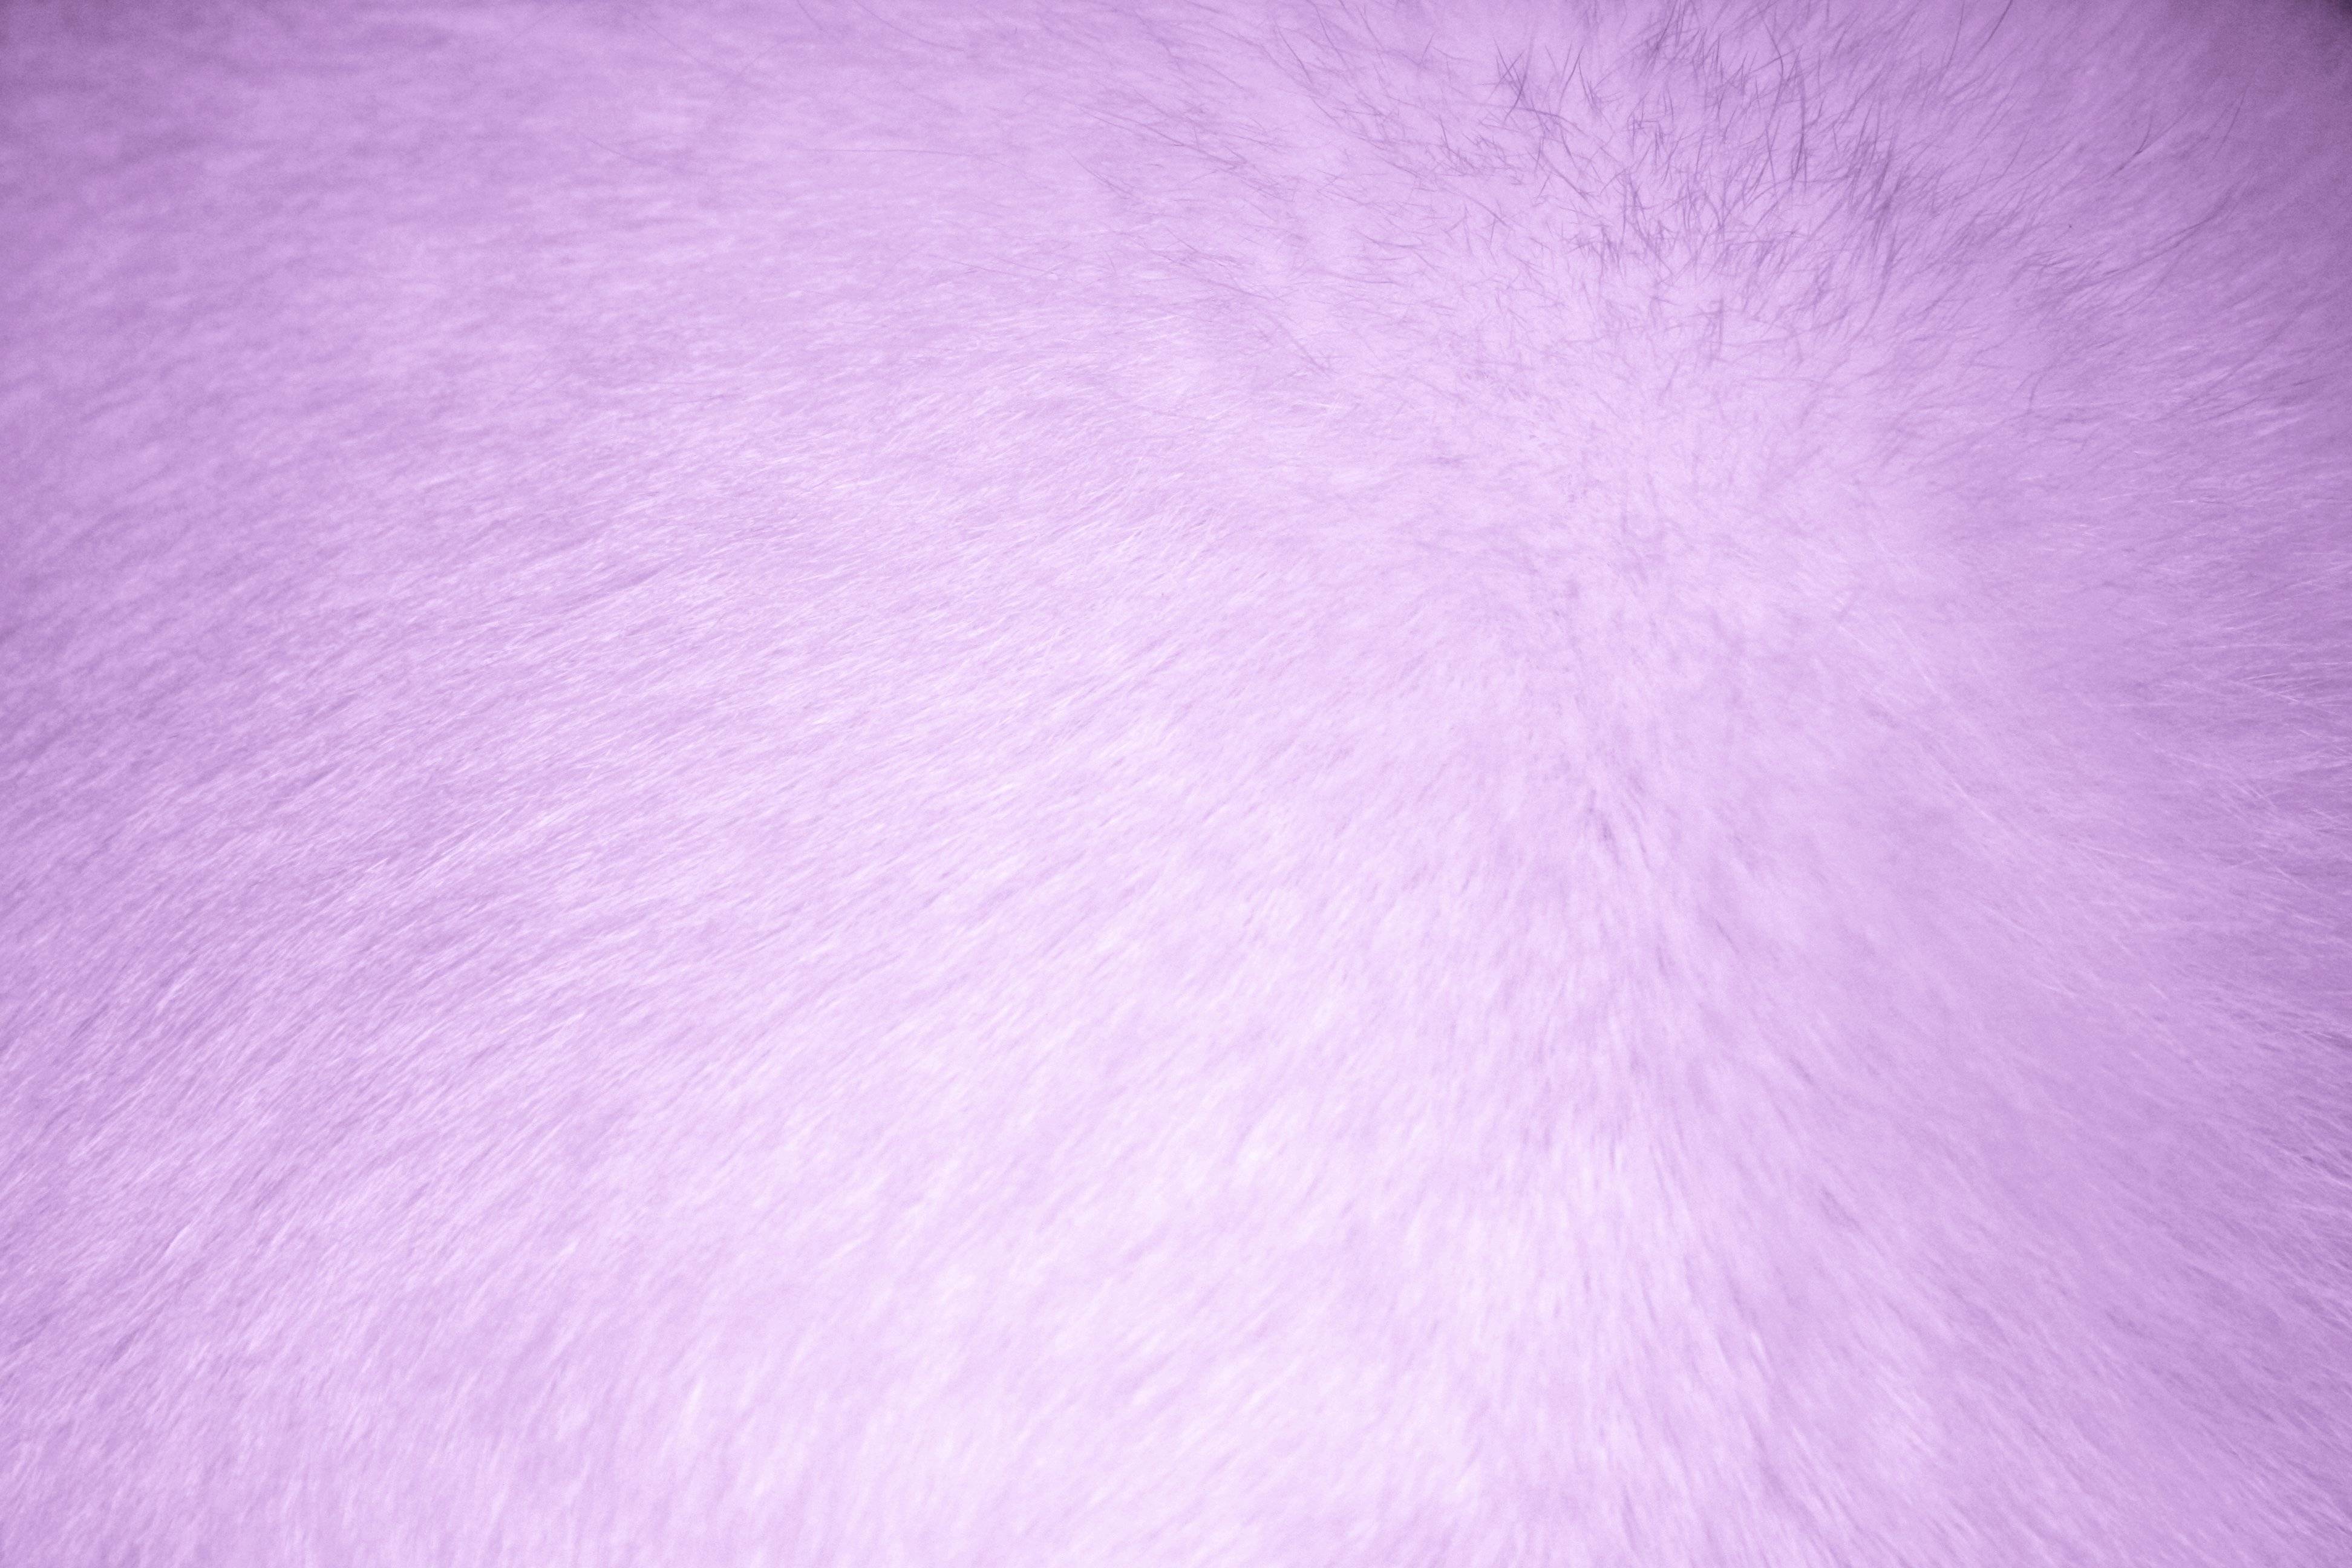 Lavender Fur Texture Picture. Free Photograph. Photo Public Domain